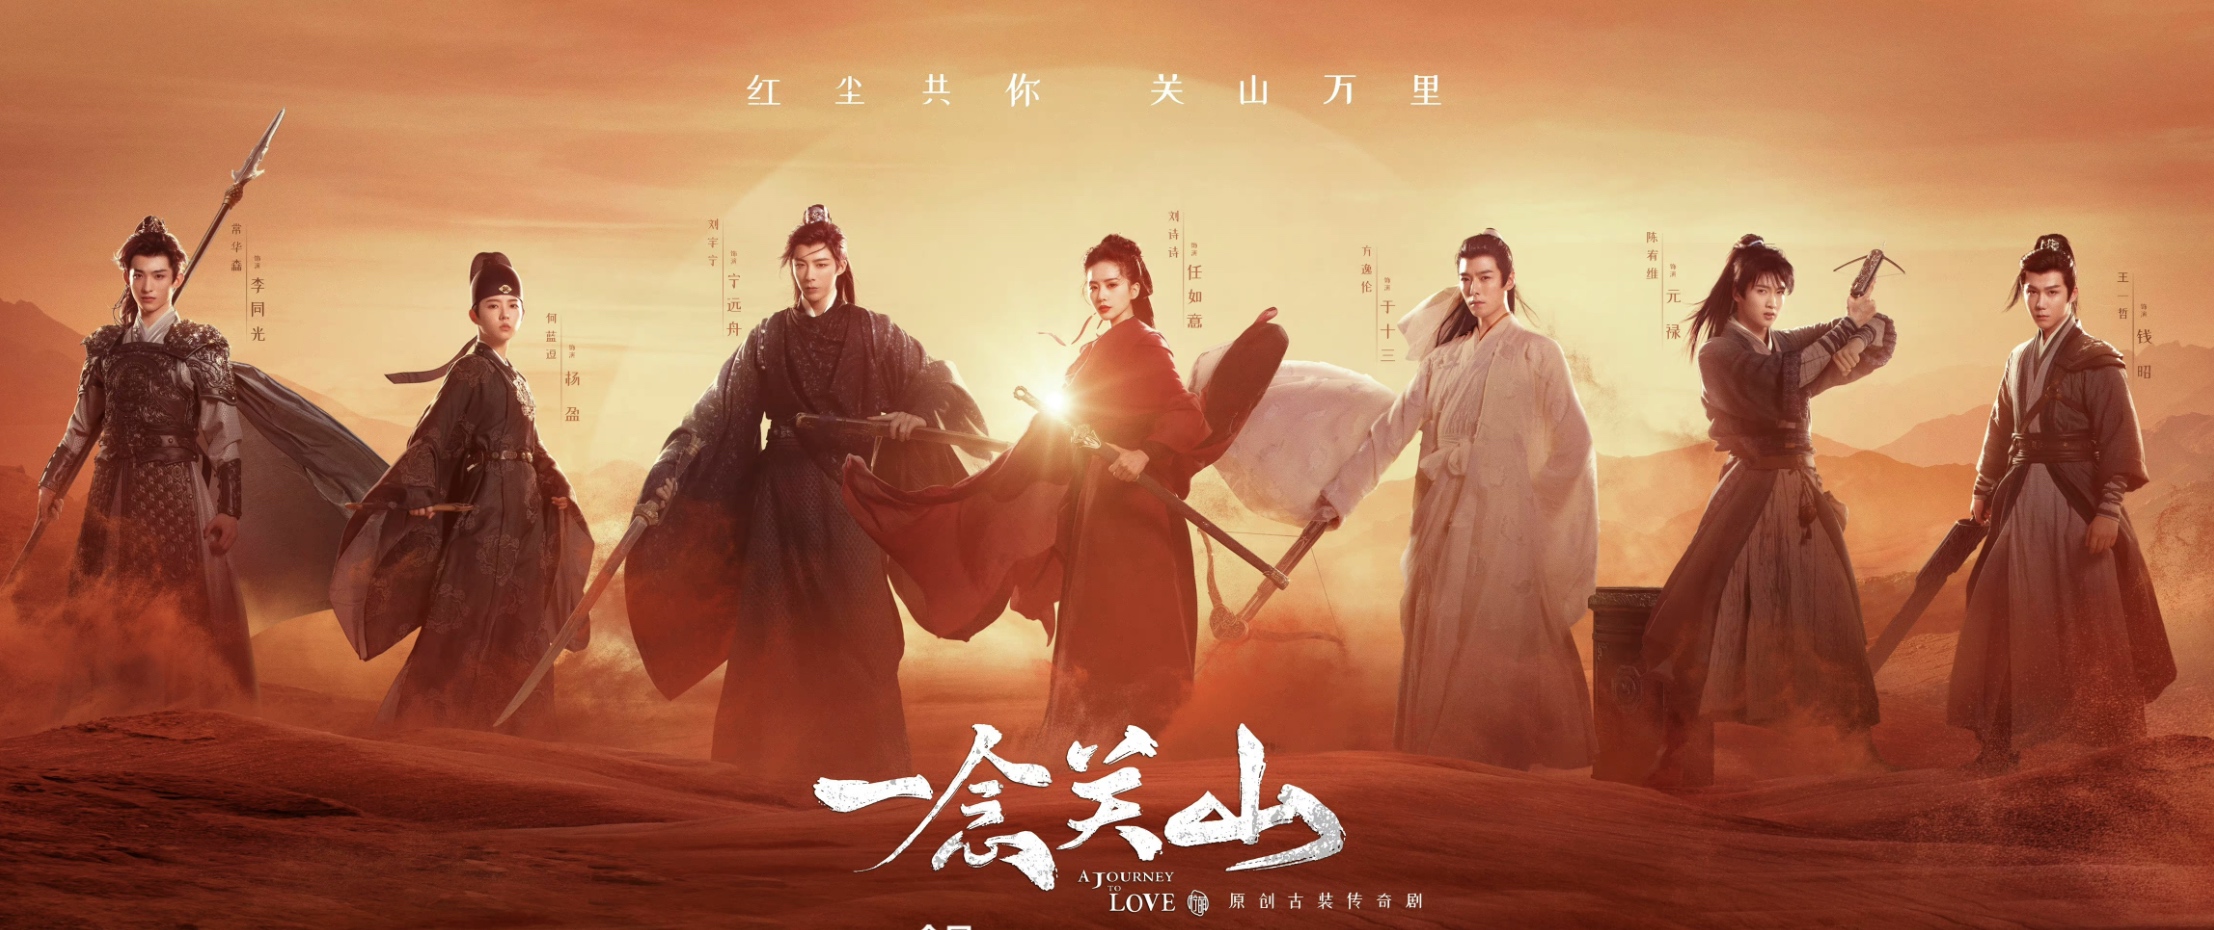 Lưu Vũ Ninh phim mới: Nhất niệm quan lại đập – A journey lớn love (2023)